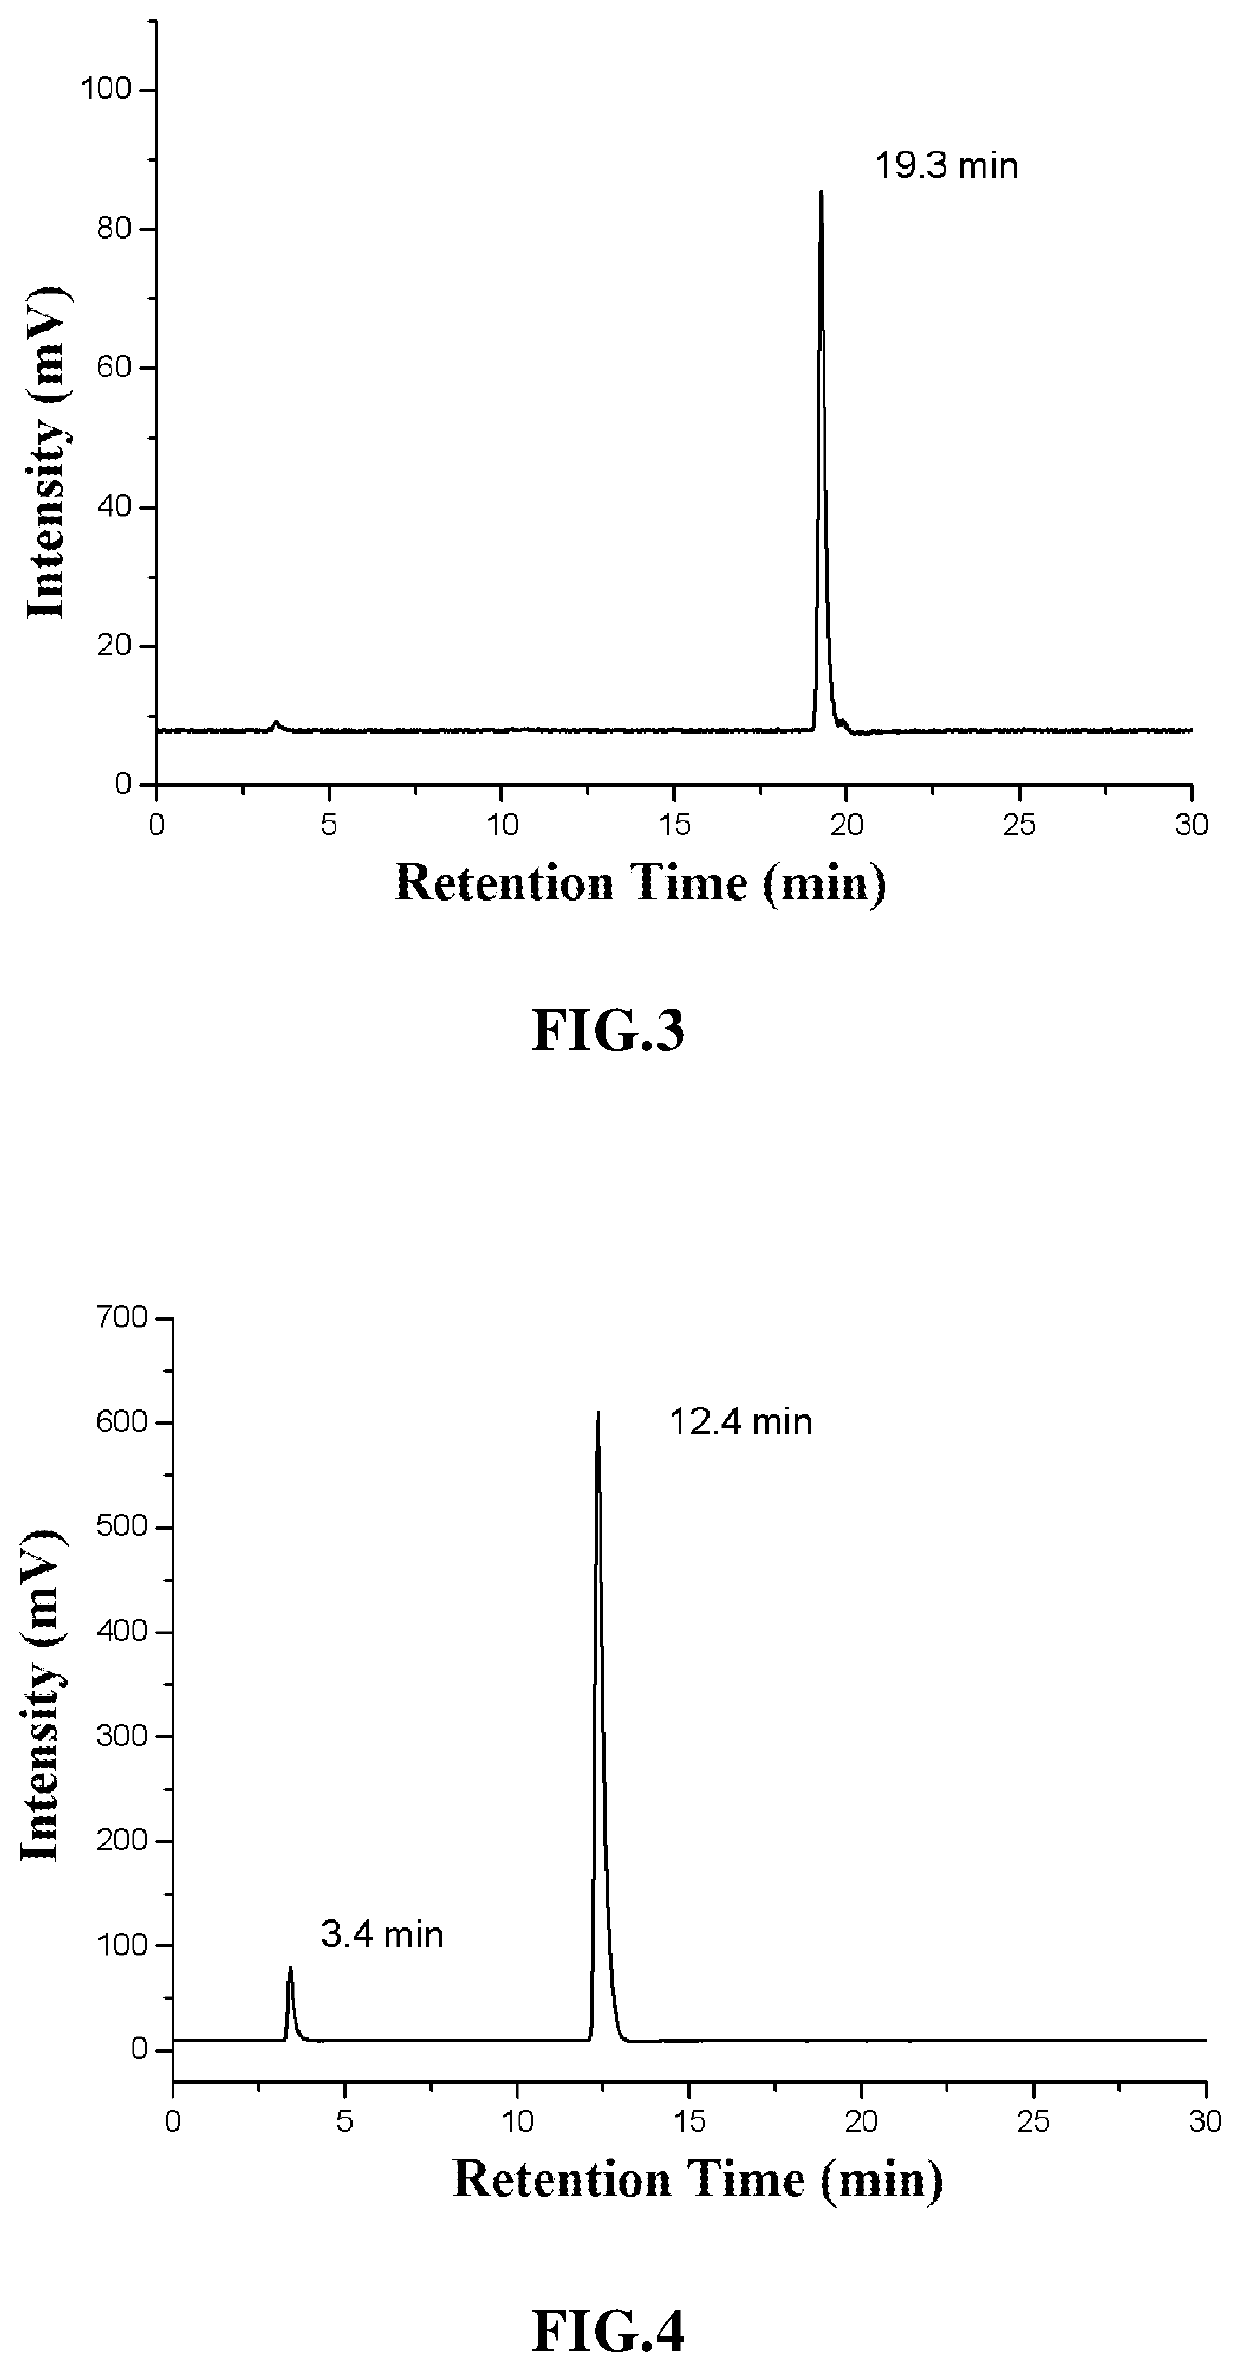 Method for preparing tricarbonyl technetium-99m intermediate